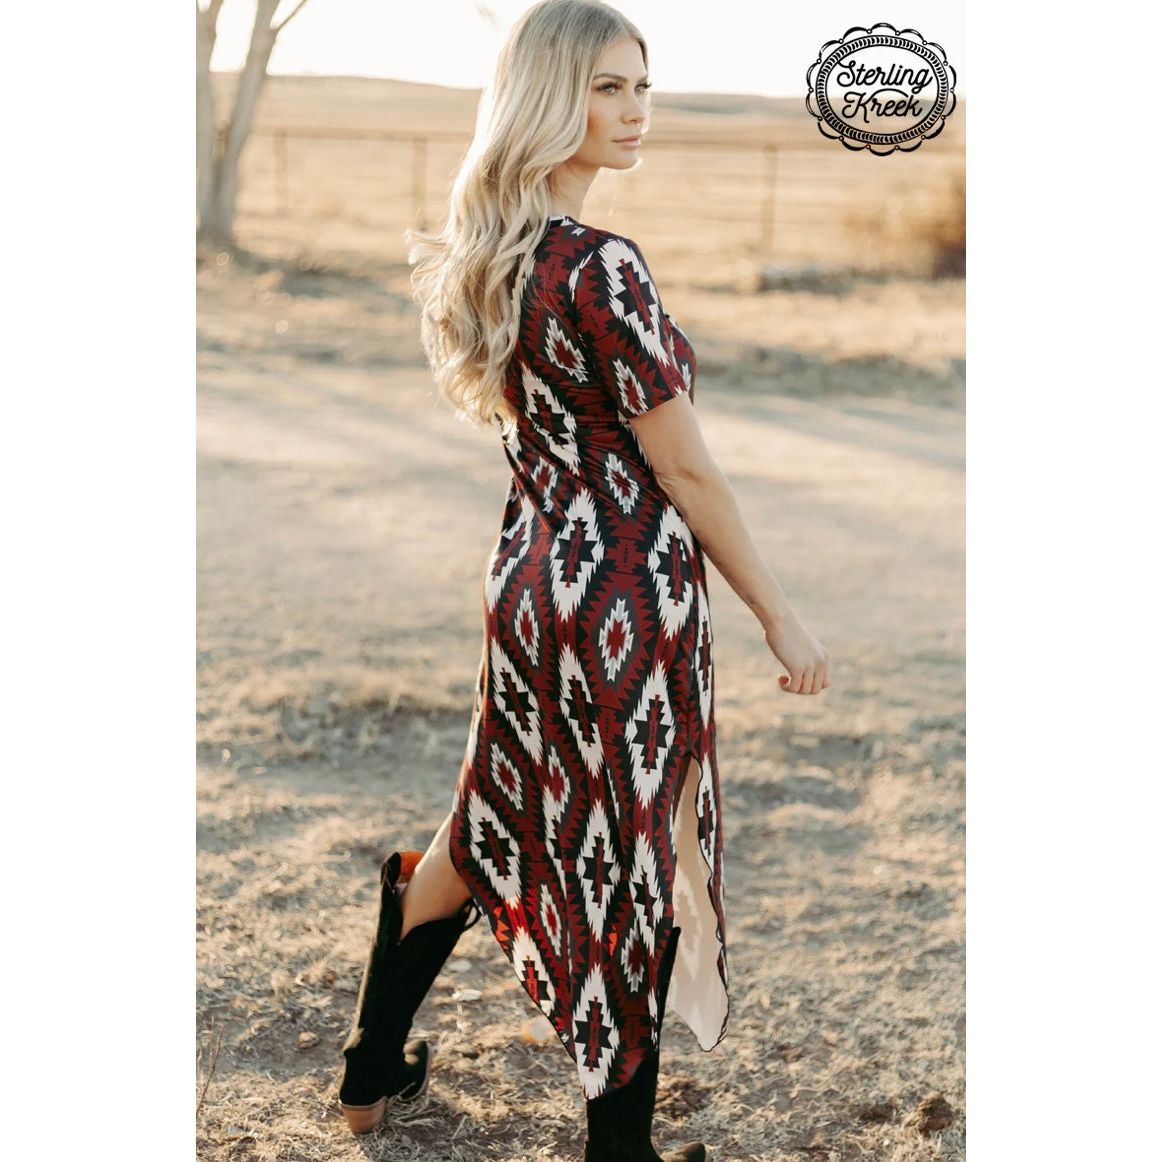 Sterling Kreek-Western Rebel Maxi Dress